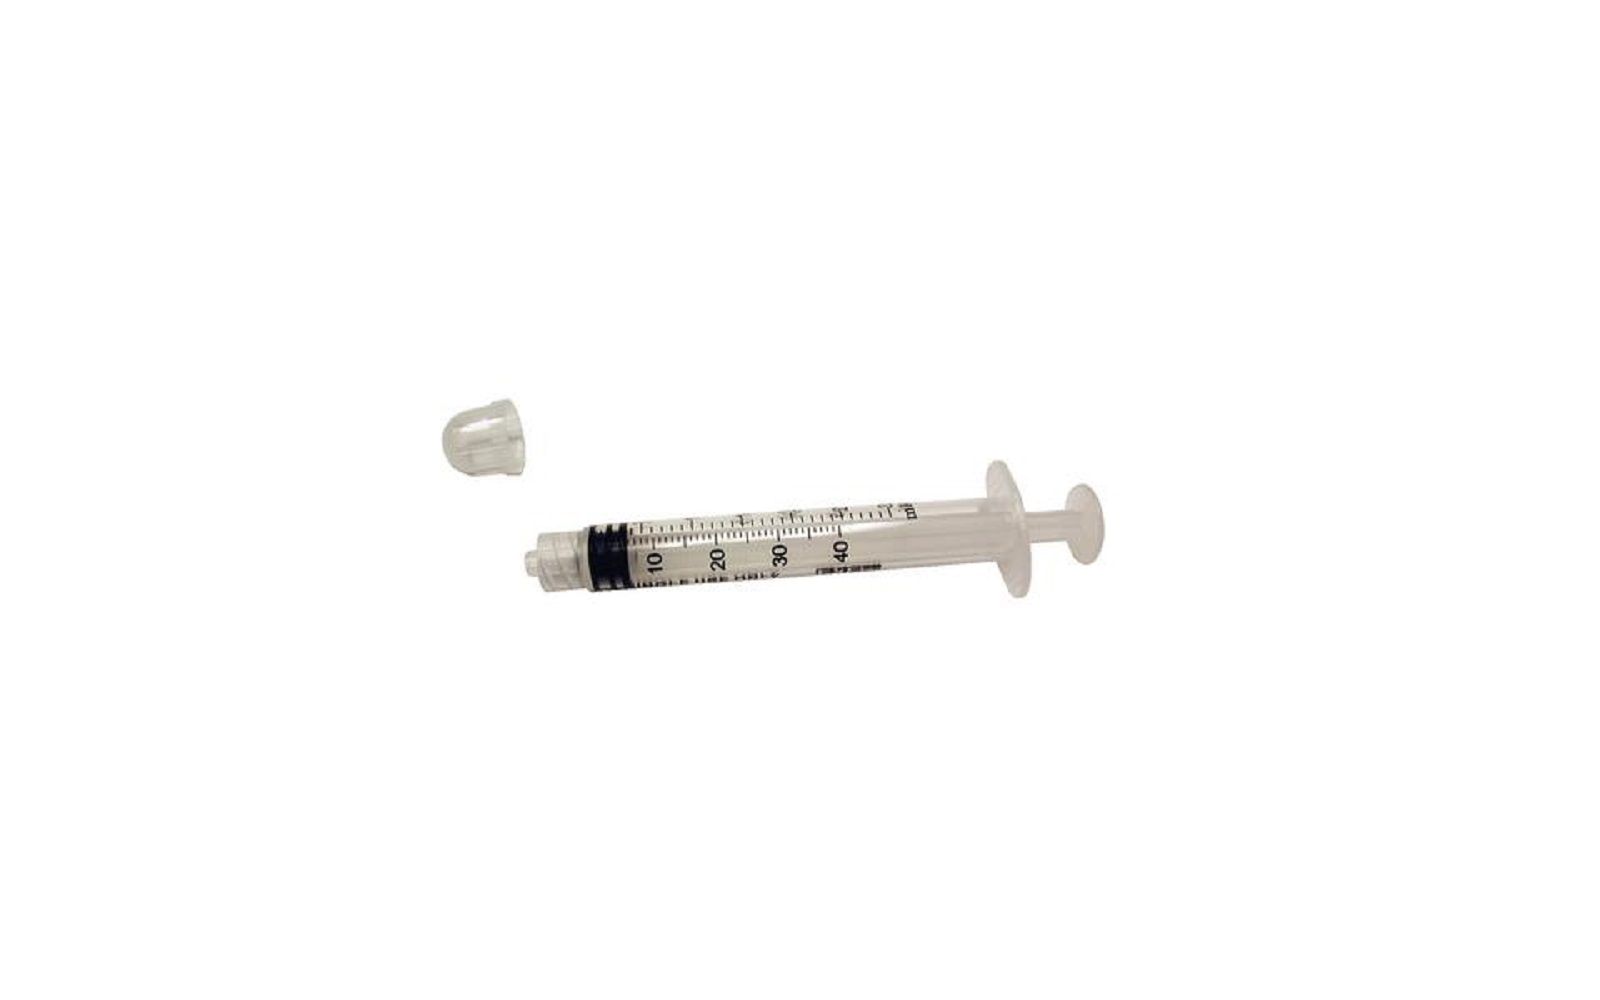 Luer lock syringe with cap 3 cc, 100/pkg